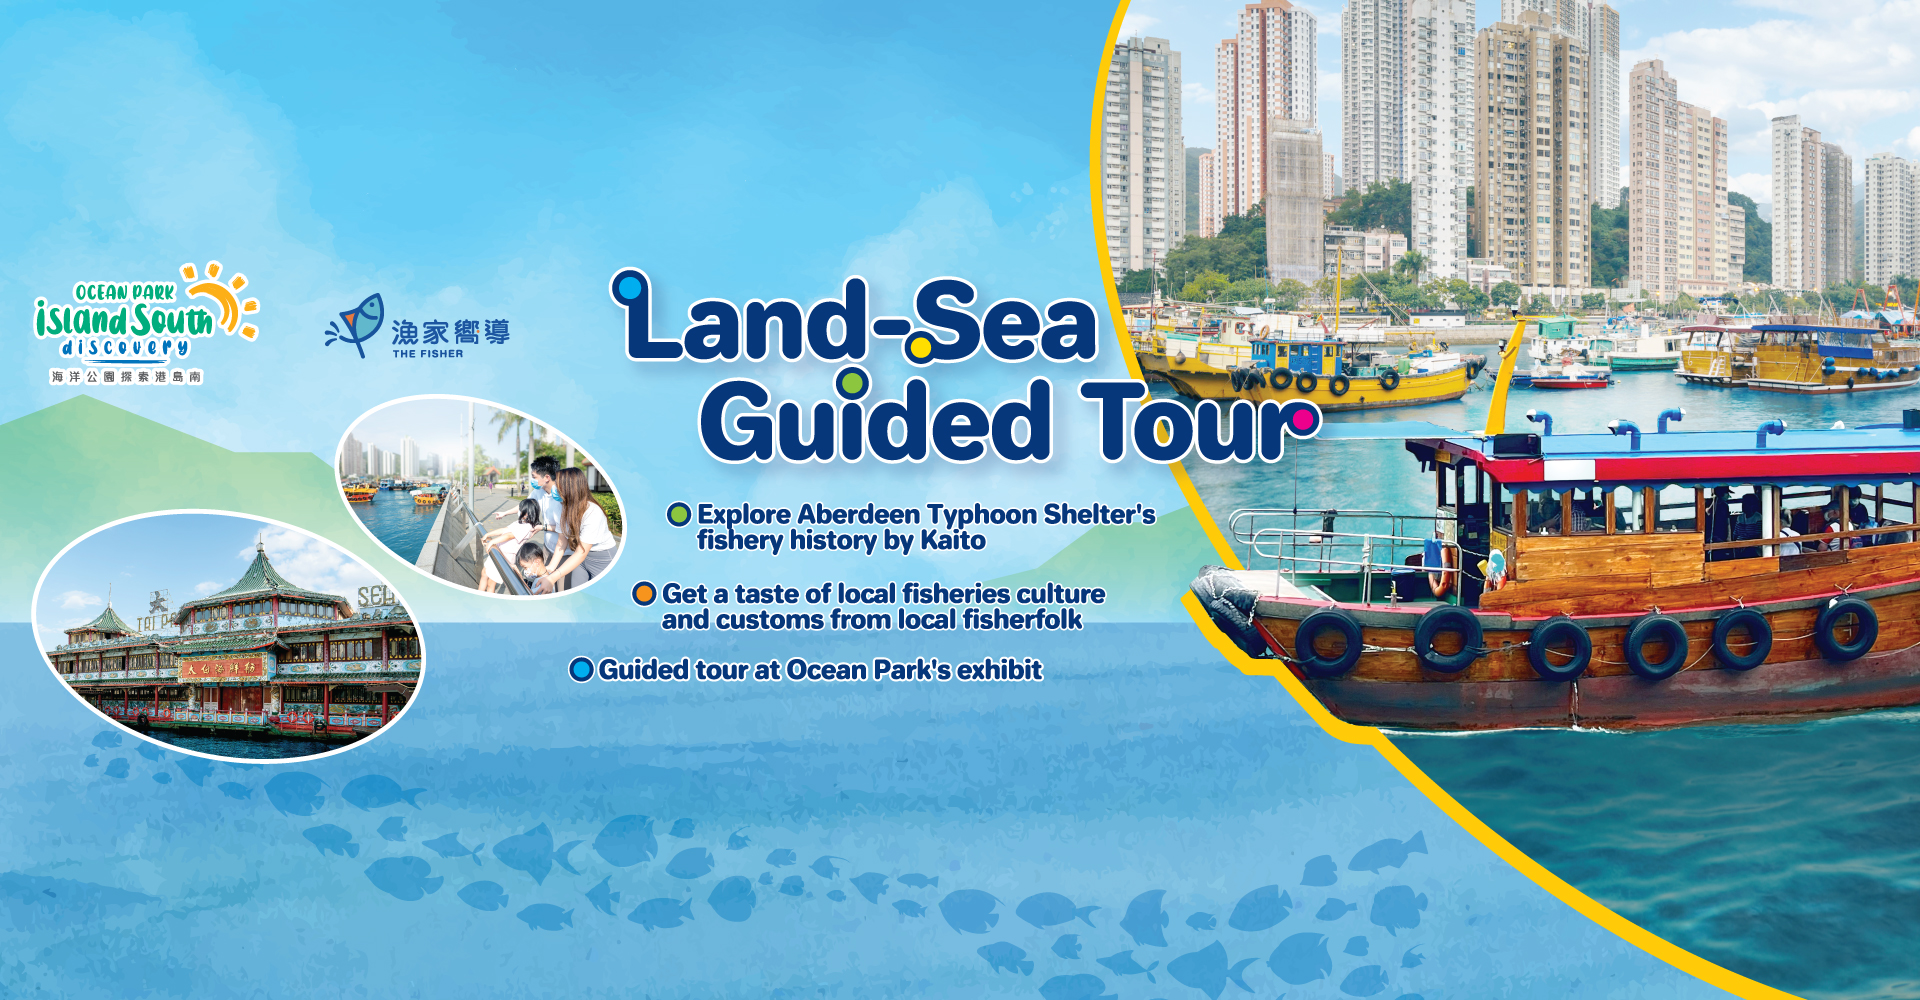 http://media.oceanpark.com.hk/files/s3fs-public/land-sea-guided-tour-innerpage-banner-desktop-en.jpg